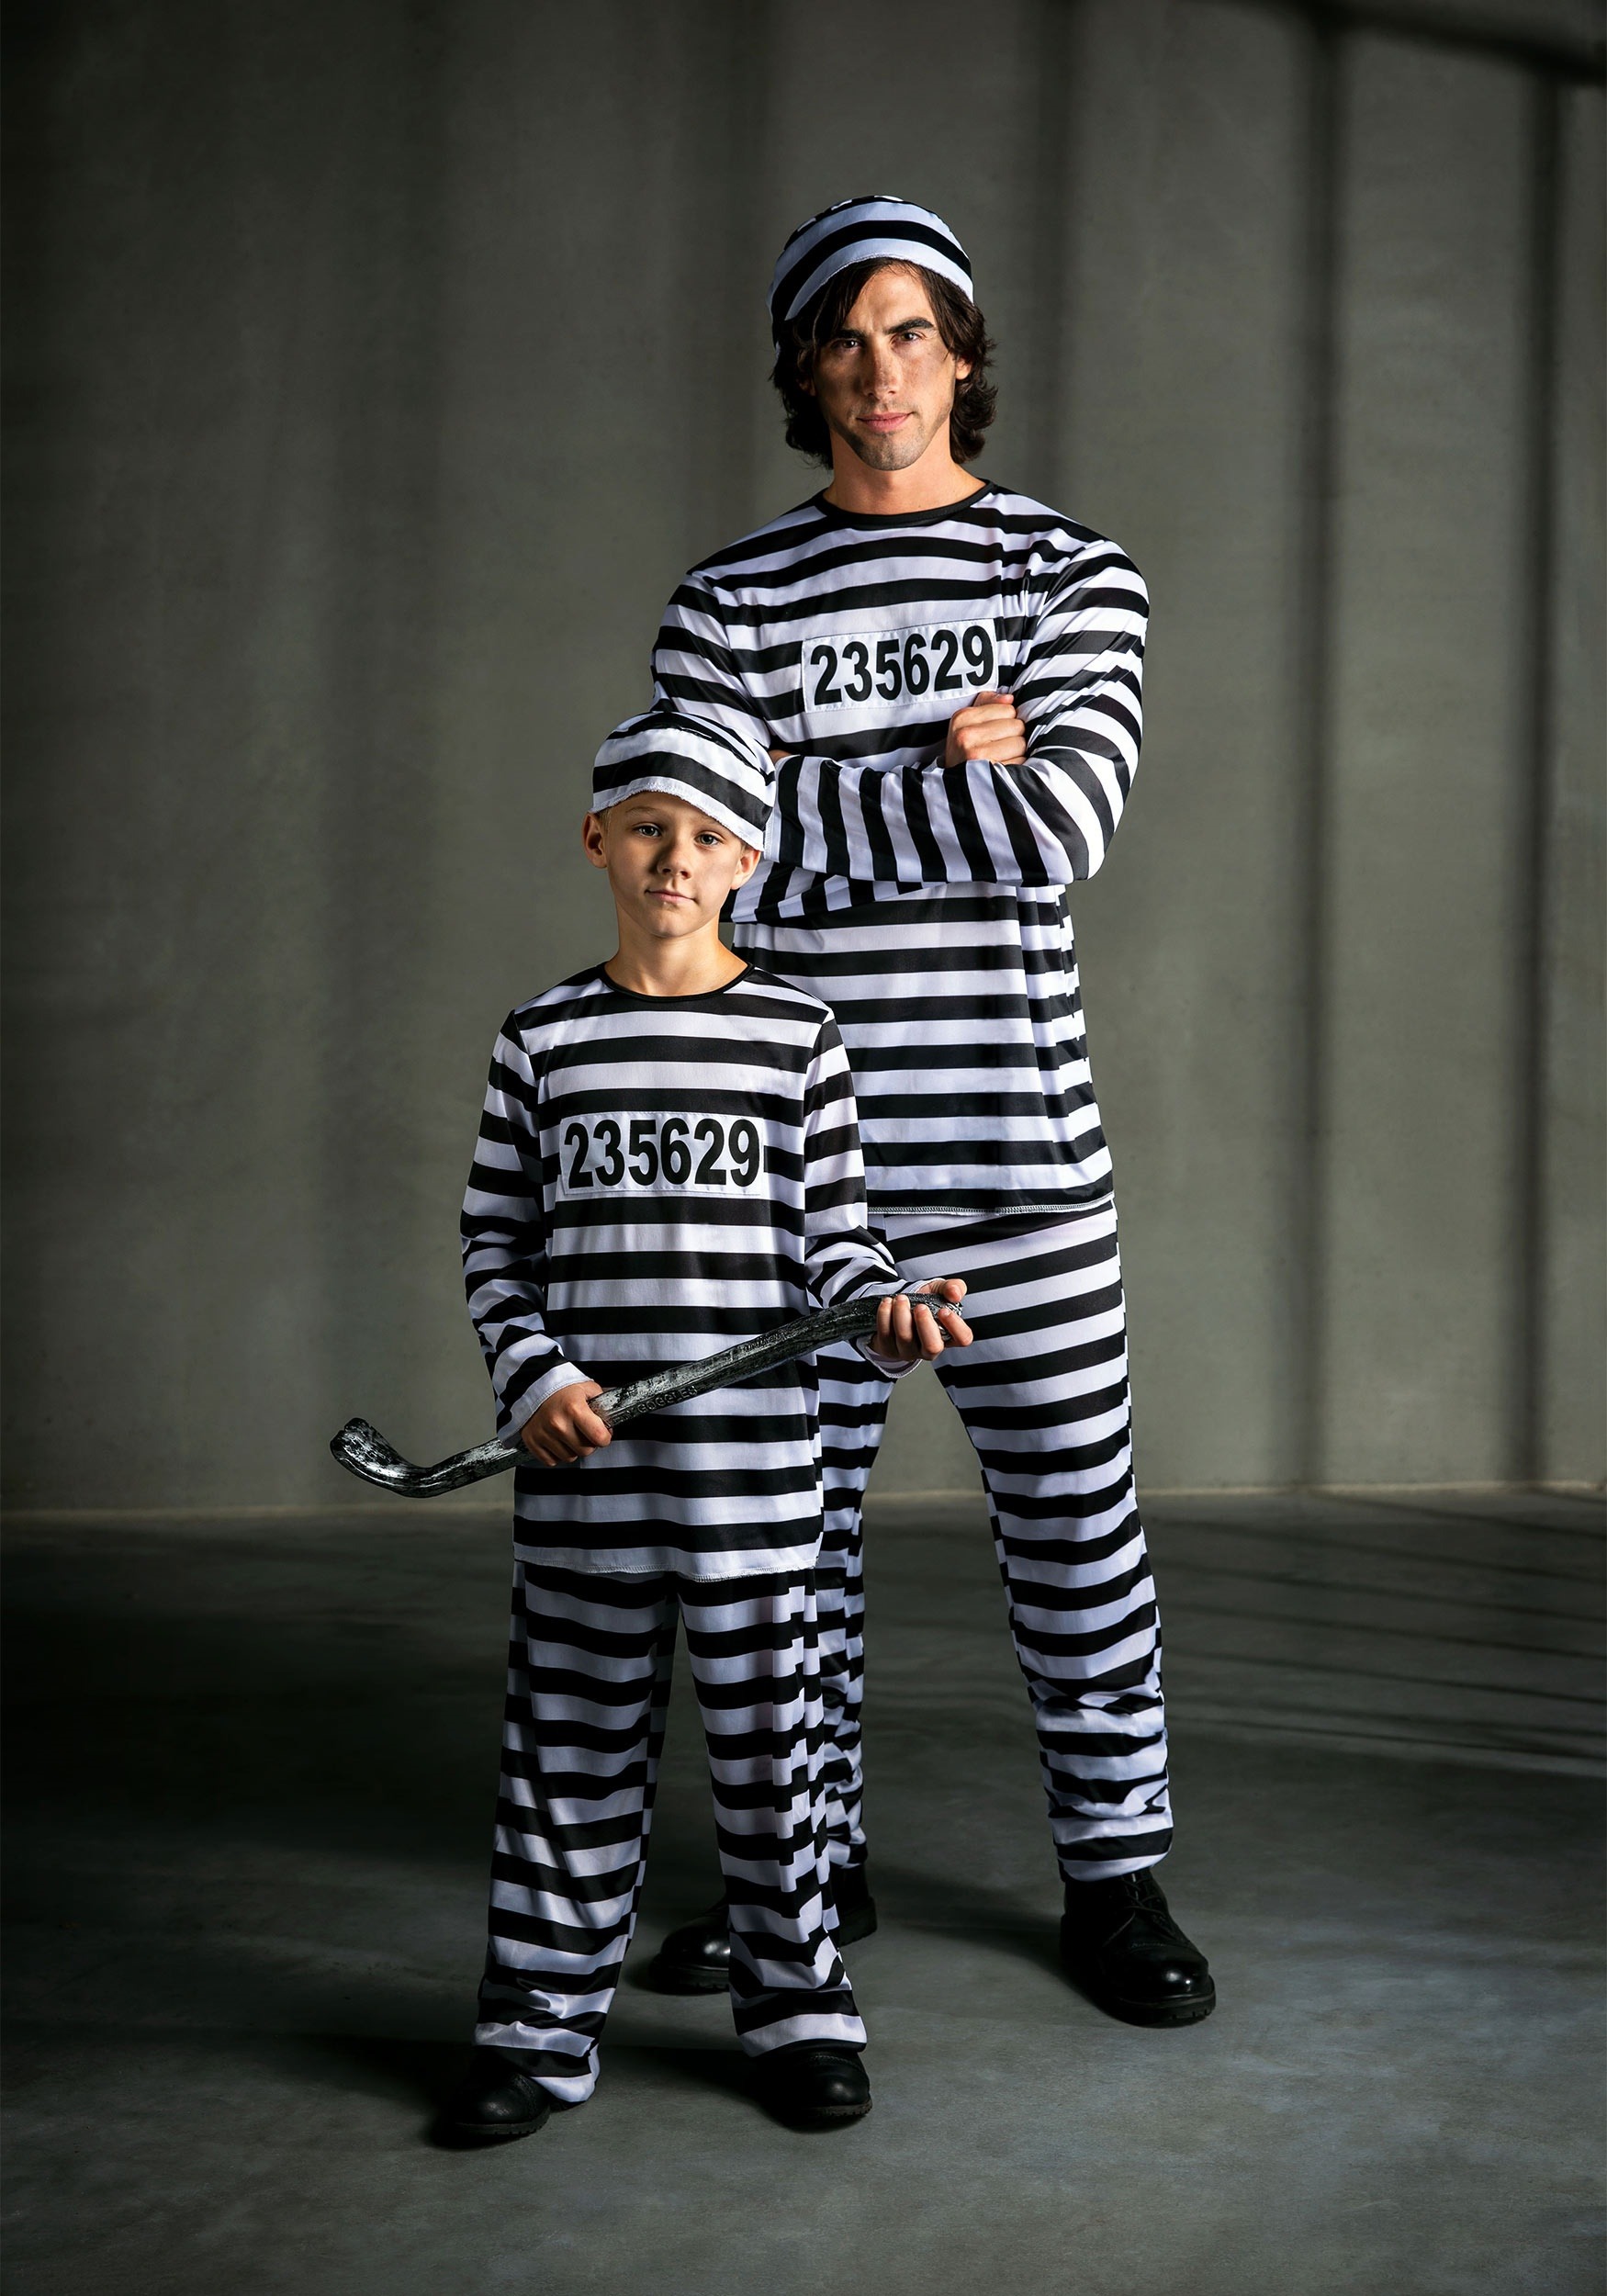 Prisoner Costume for Men